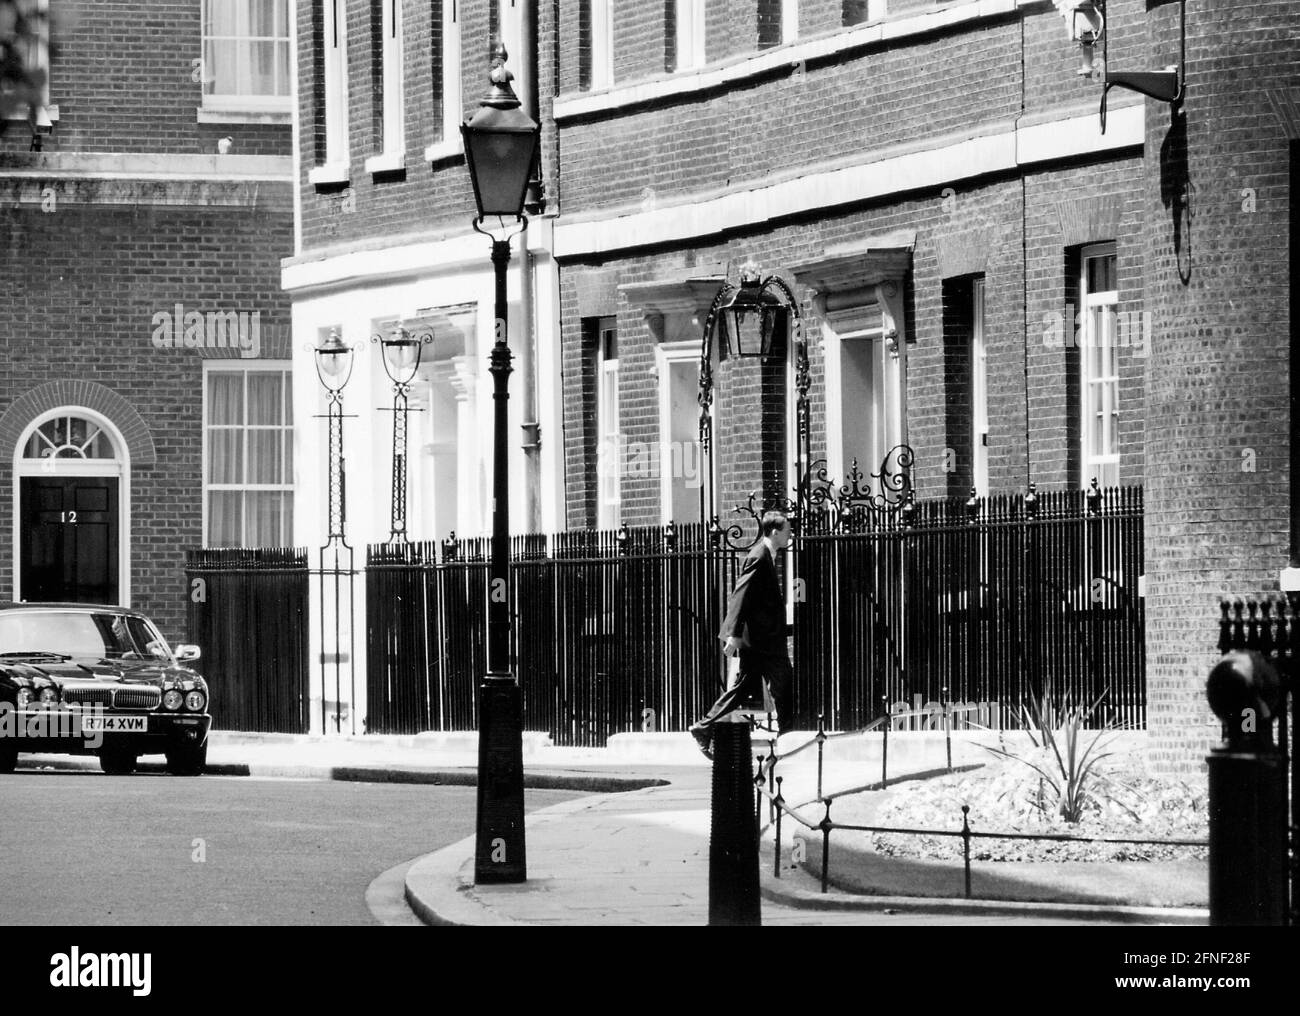 Le siège du Premier ministre britannique. Photo: Waldemar Da Rin [traduction automatique] Banque D'Images